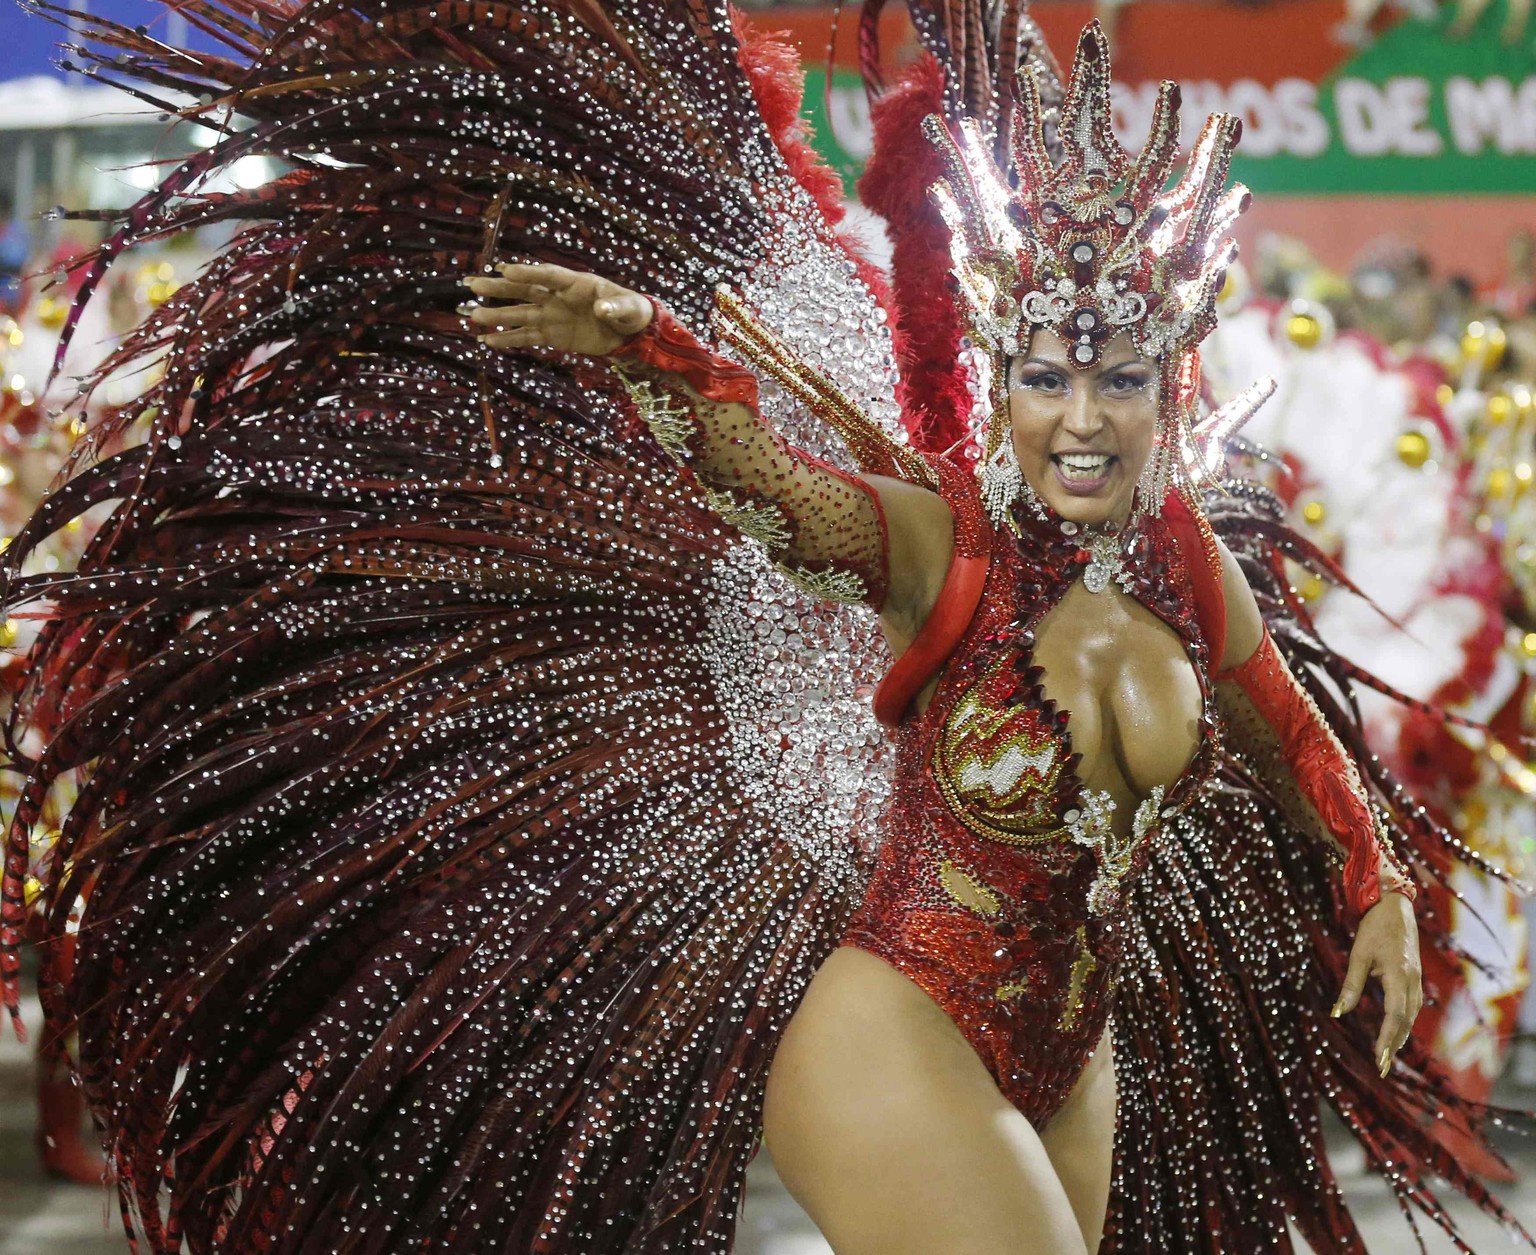 Viel nackte Haut und bunte Kostüms zeigen Brasilianerinnen besonders am Karneval.